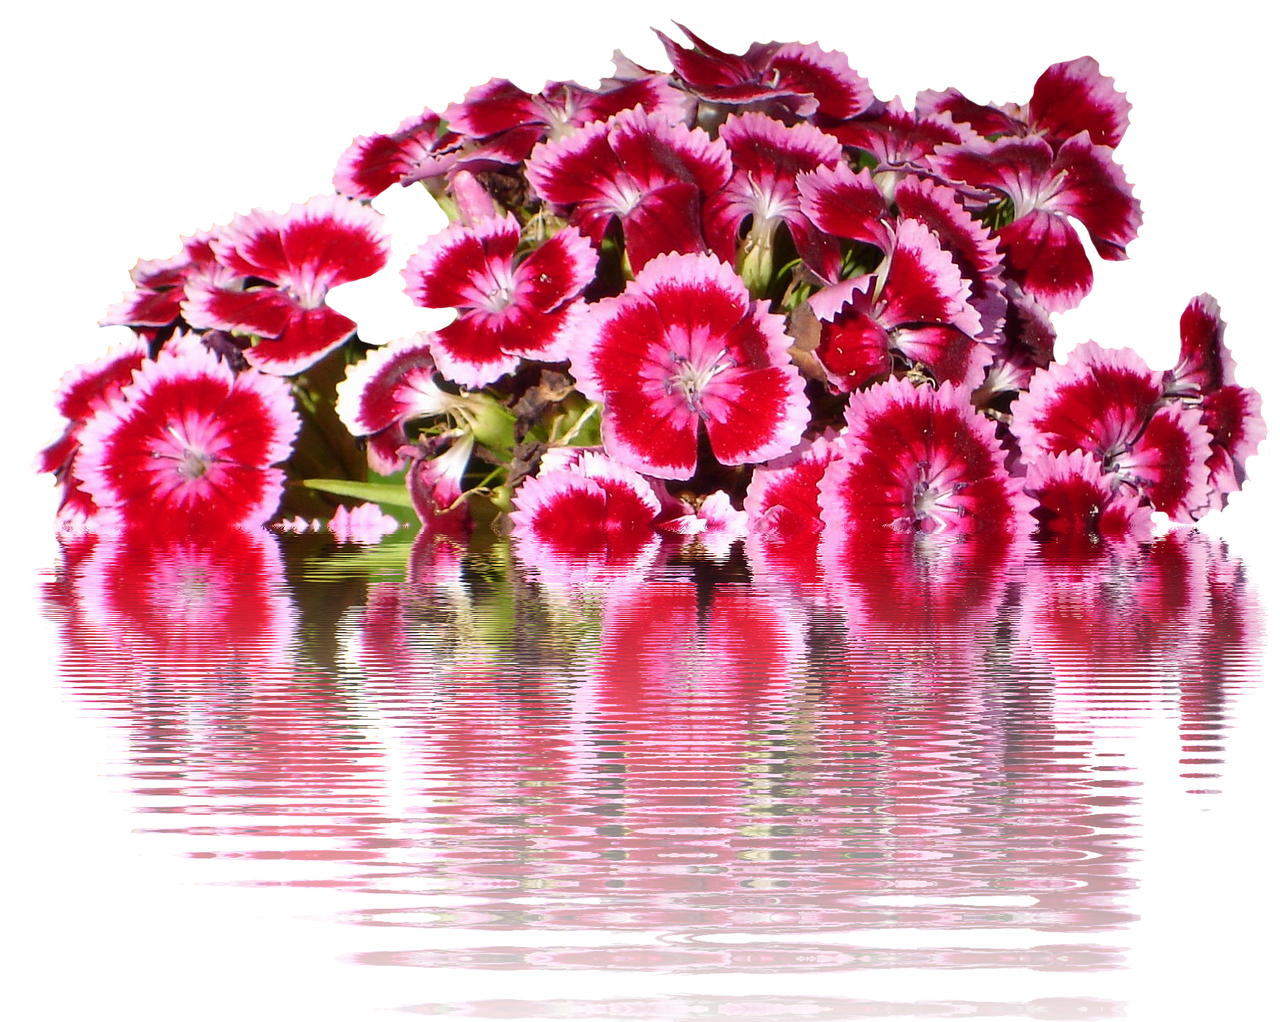 tausendschön flowers graphic free photo